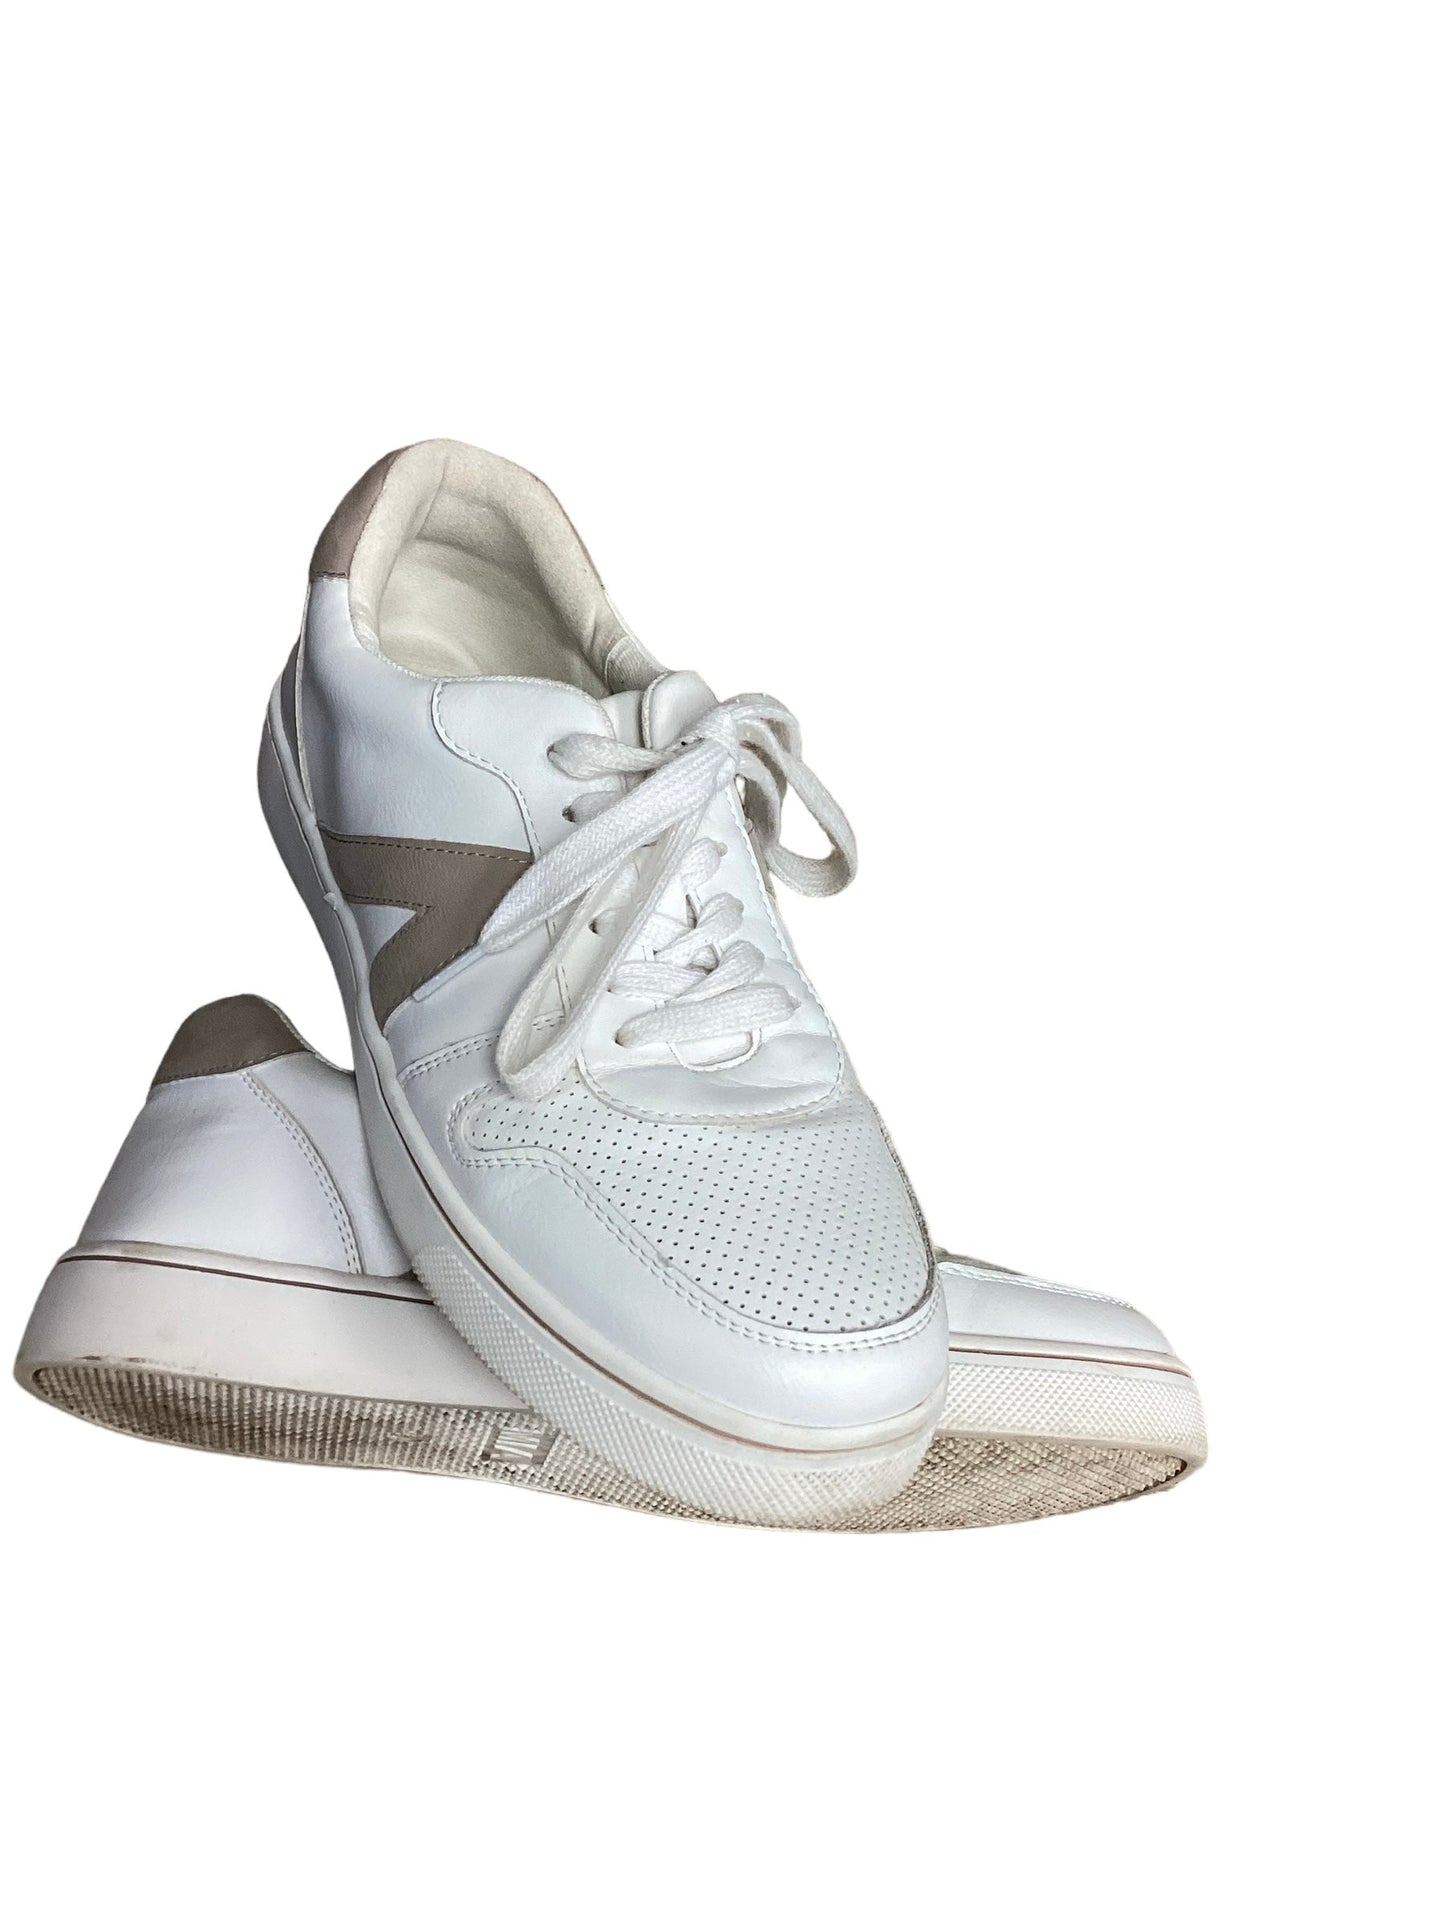 White Shoes Sneakers Mia, Size 7.5